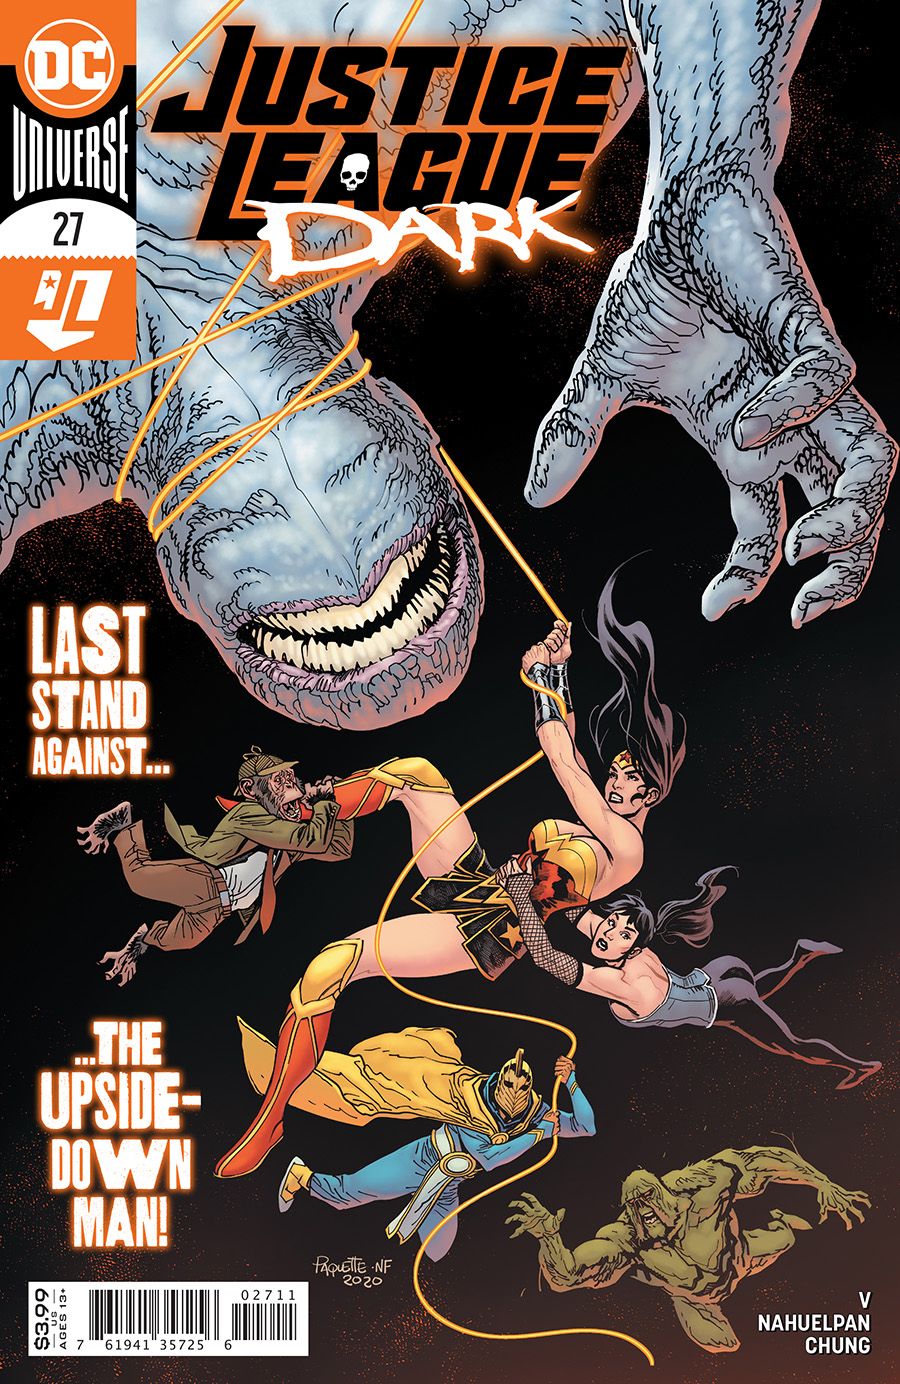 Justice League Dark #27 Comic